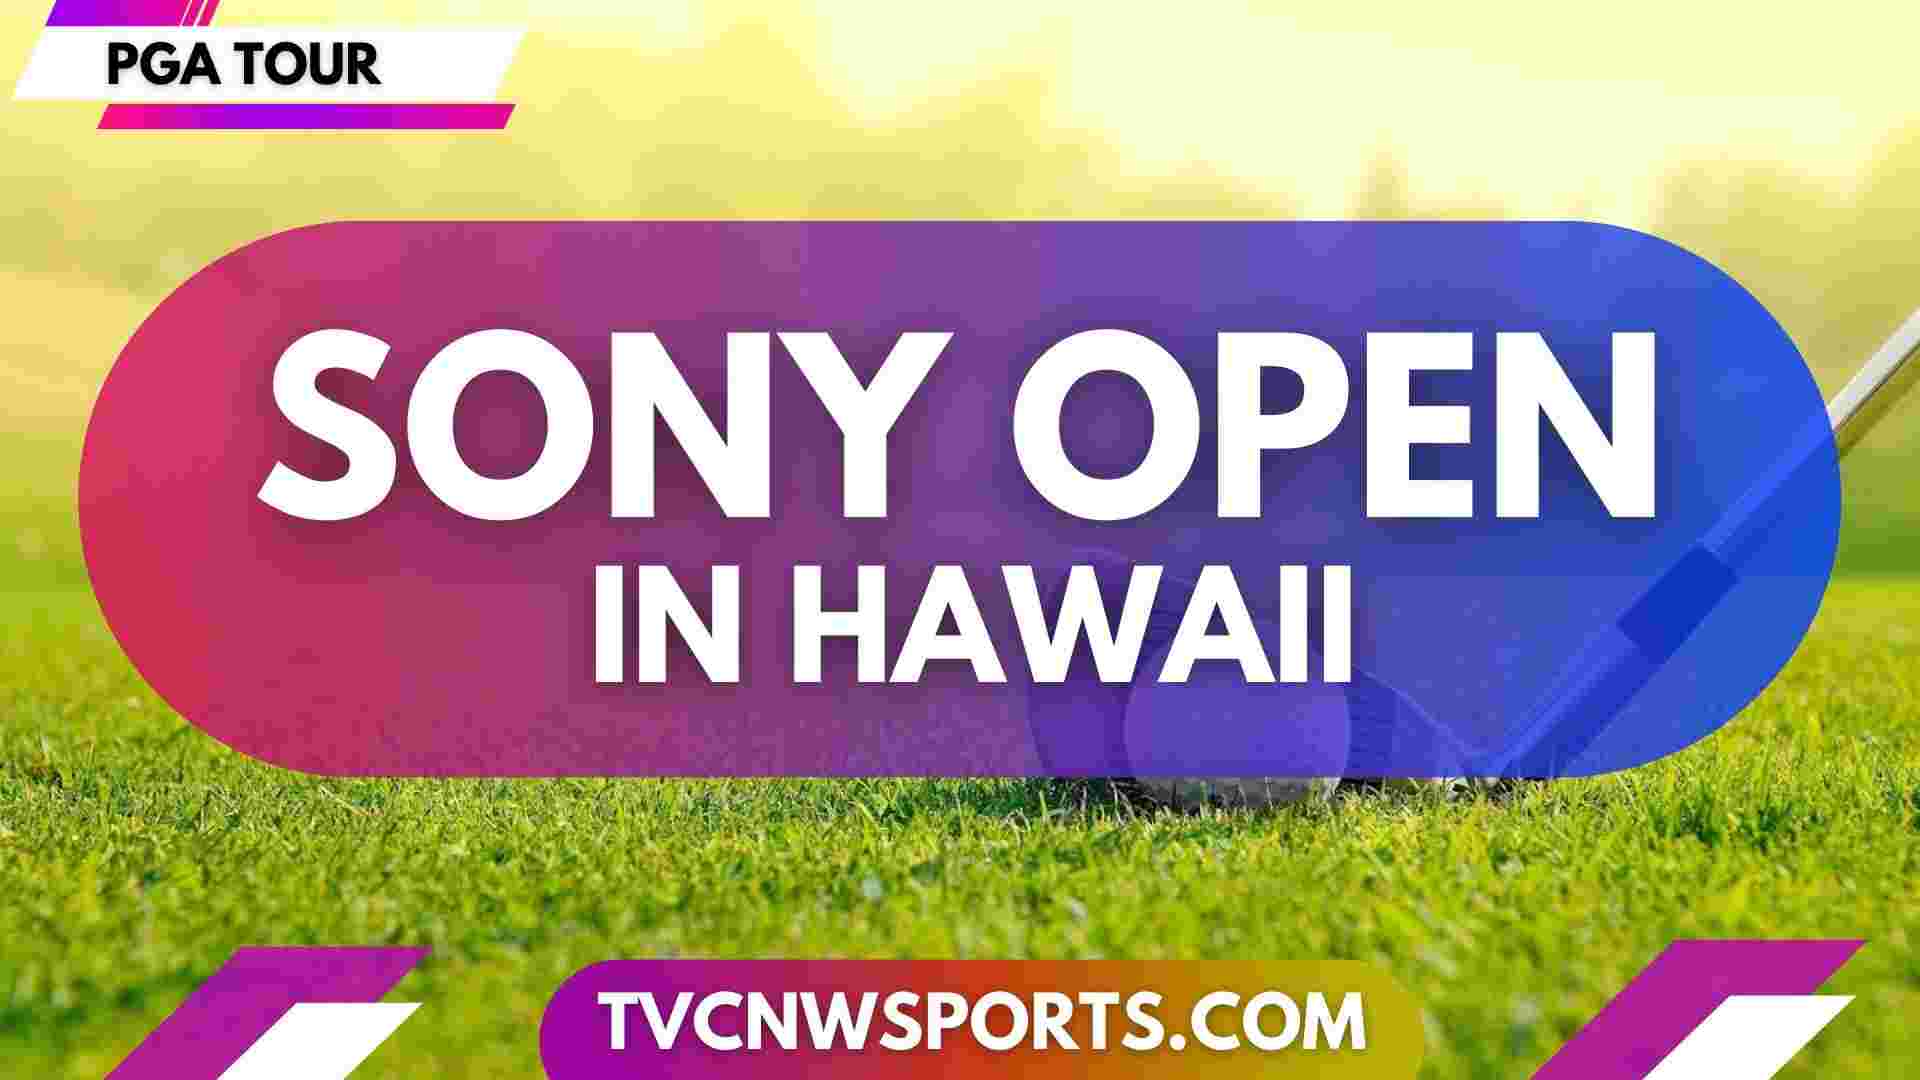 Sony Open In Hawaii PGA Golf